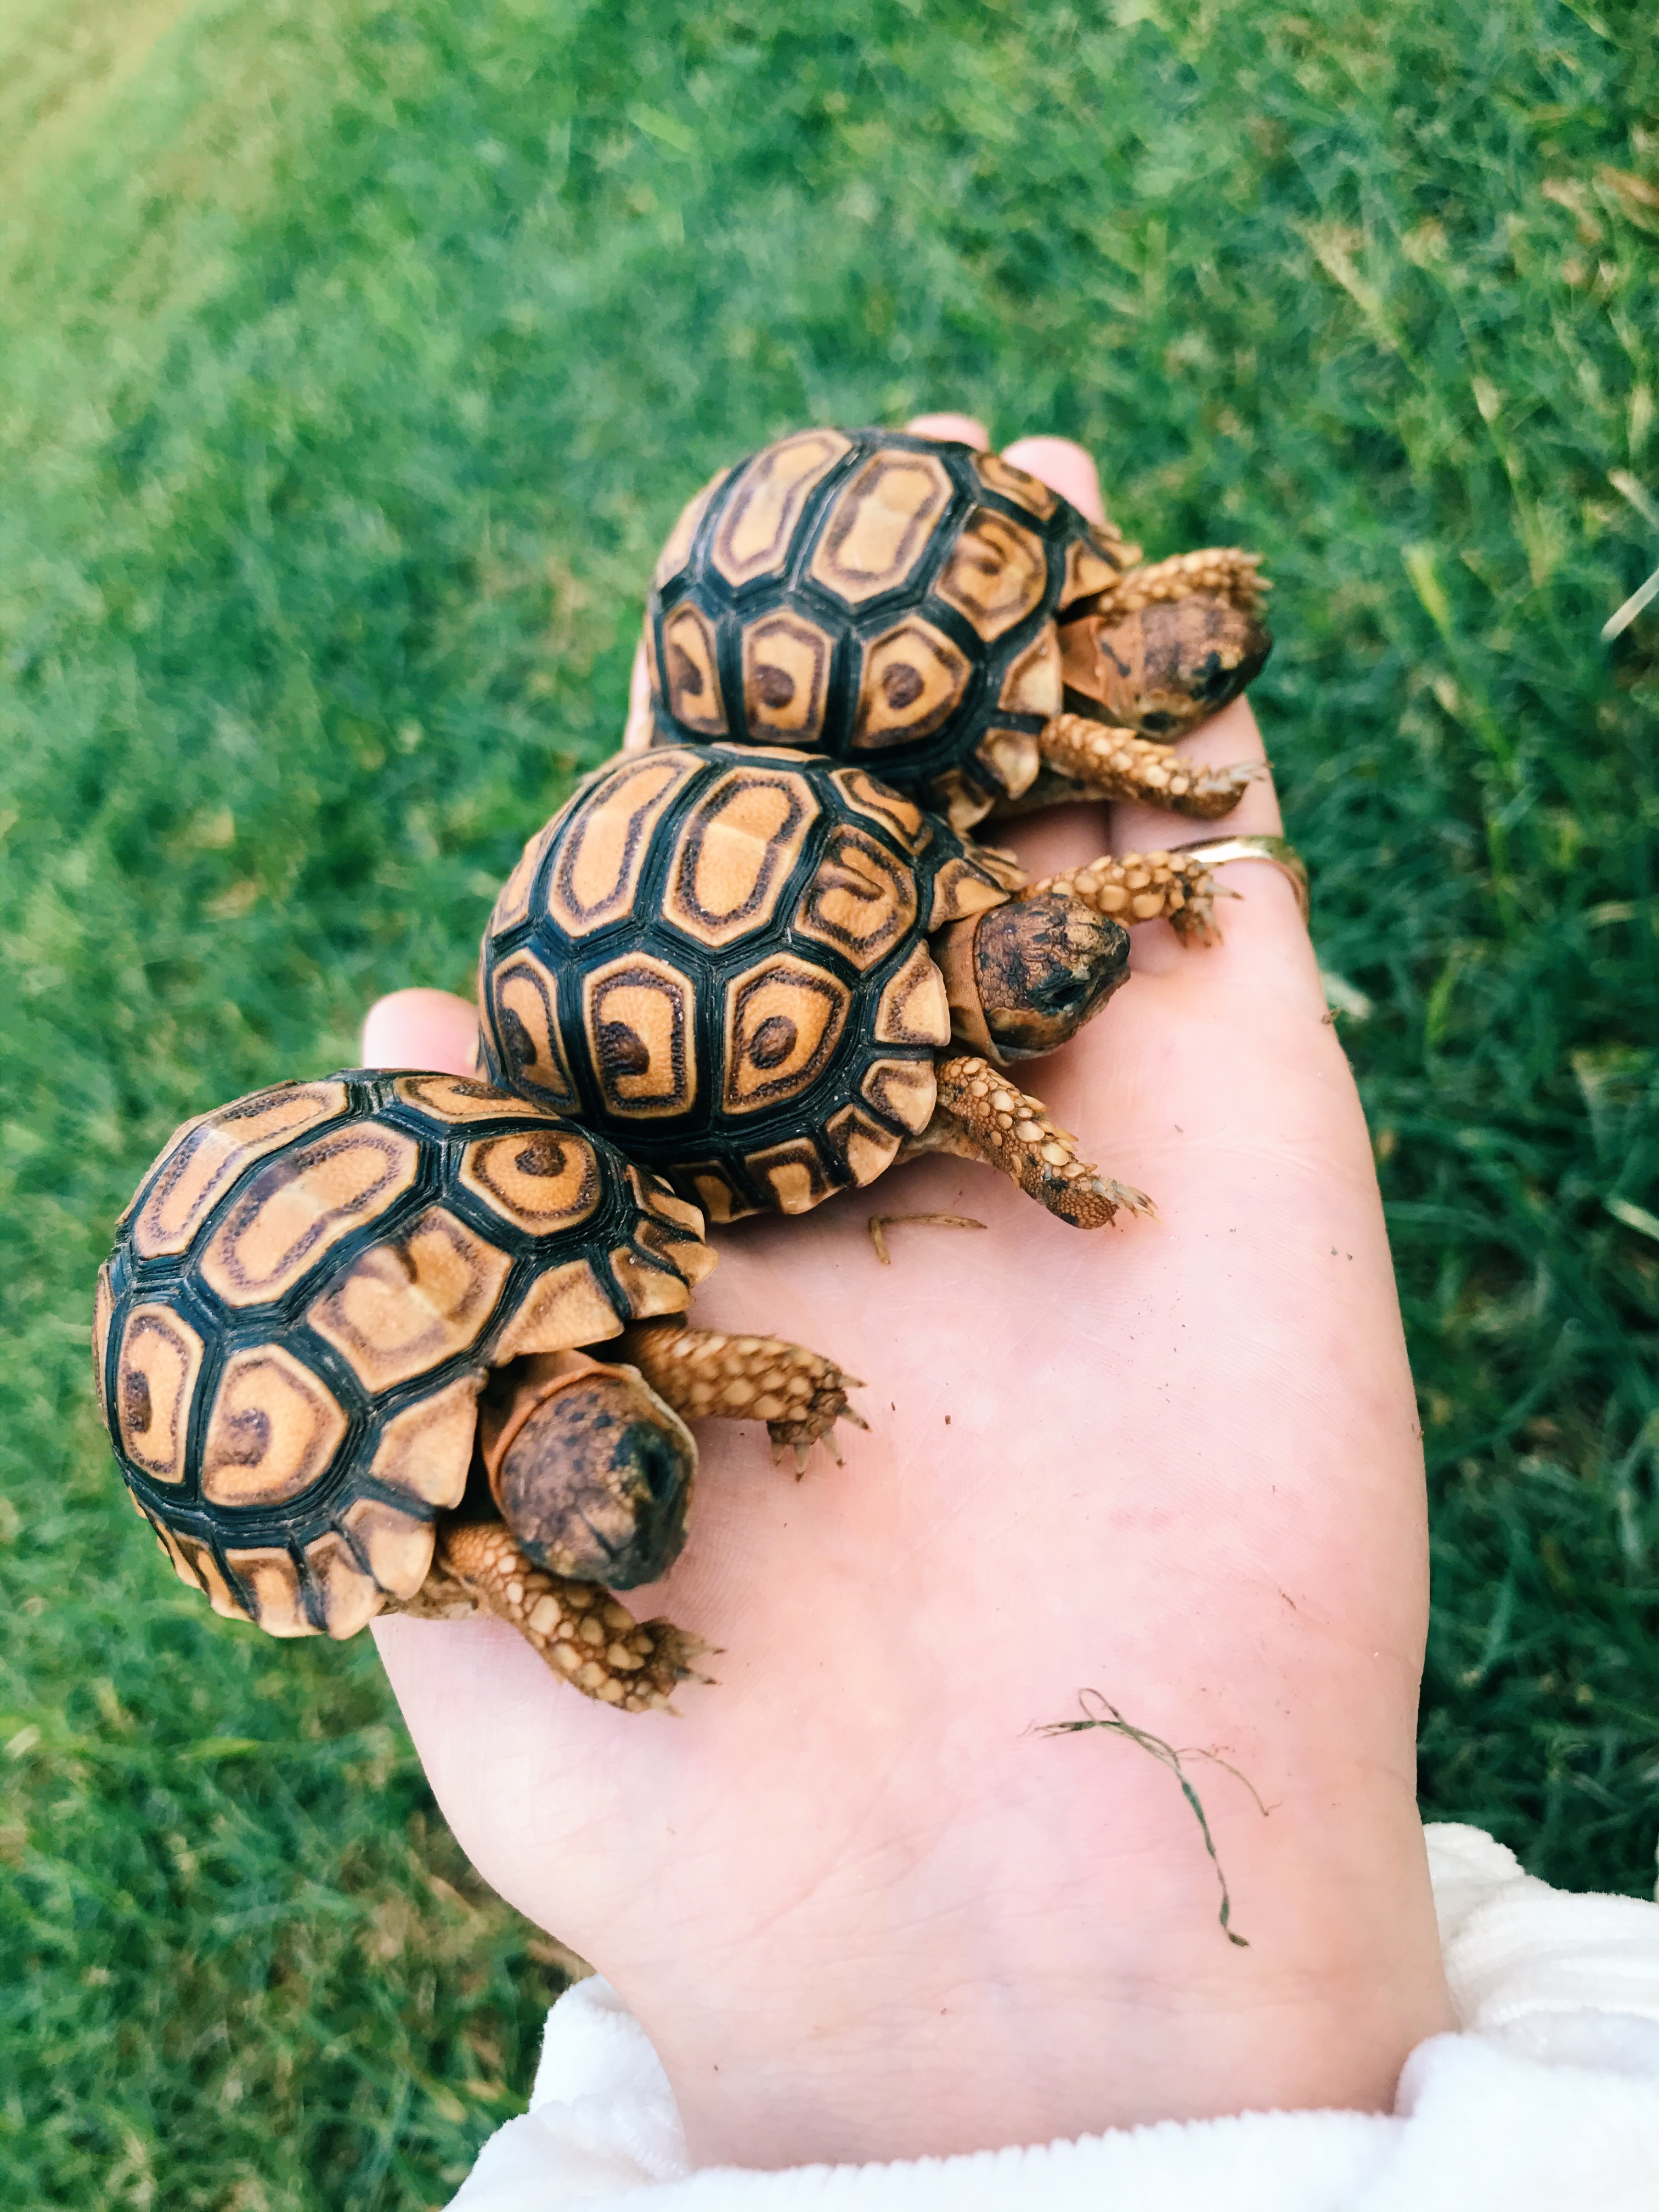 Baby Tortoises